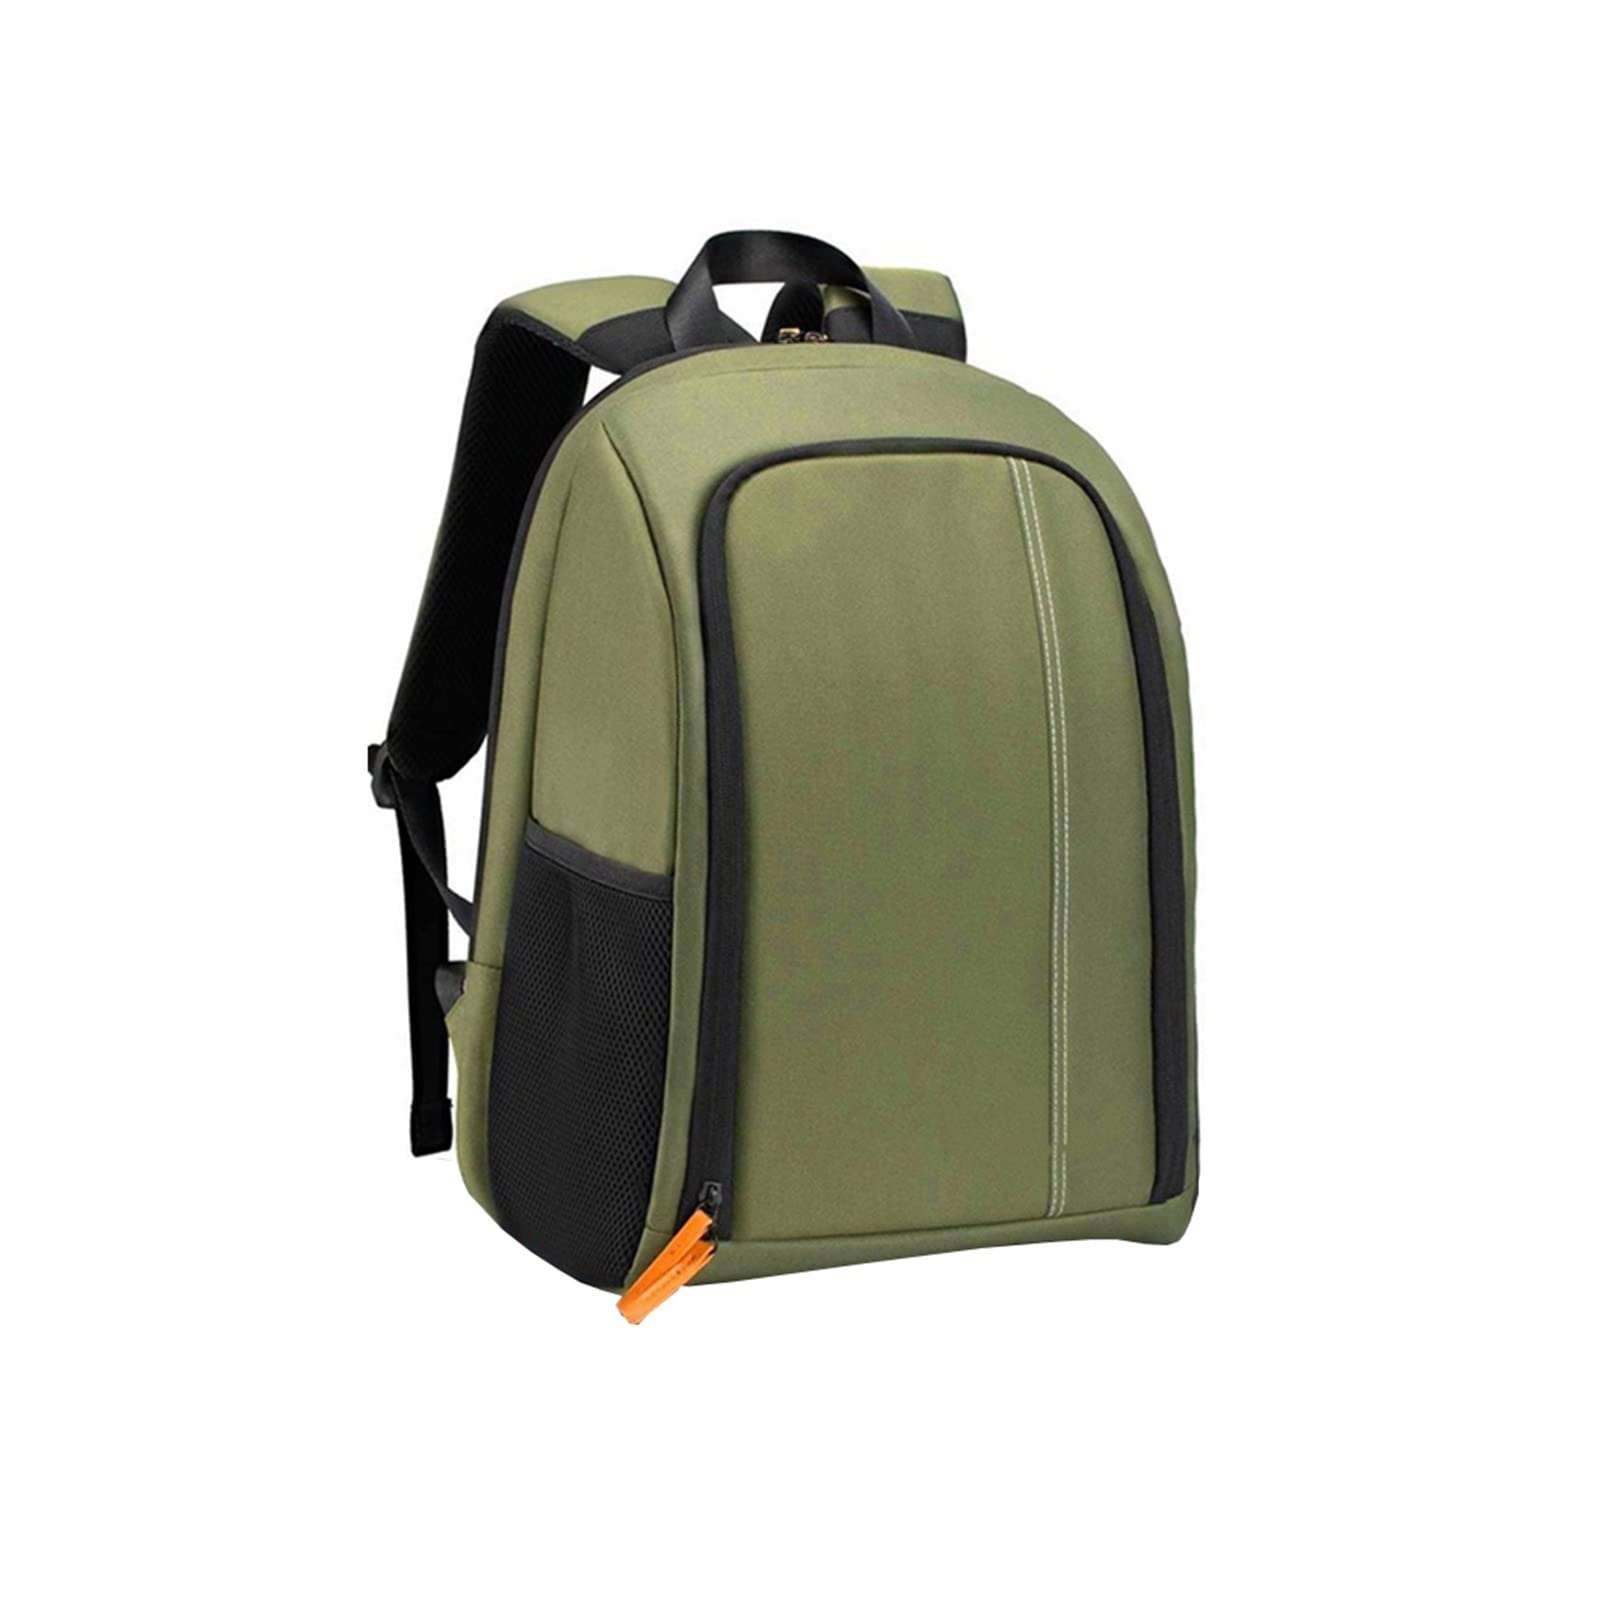 送料無料RISLE Waterproof Camera Backpack Photography Equipment Shoulder Bag Outdoor Travel Versatile Backpack Color Gr